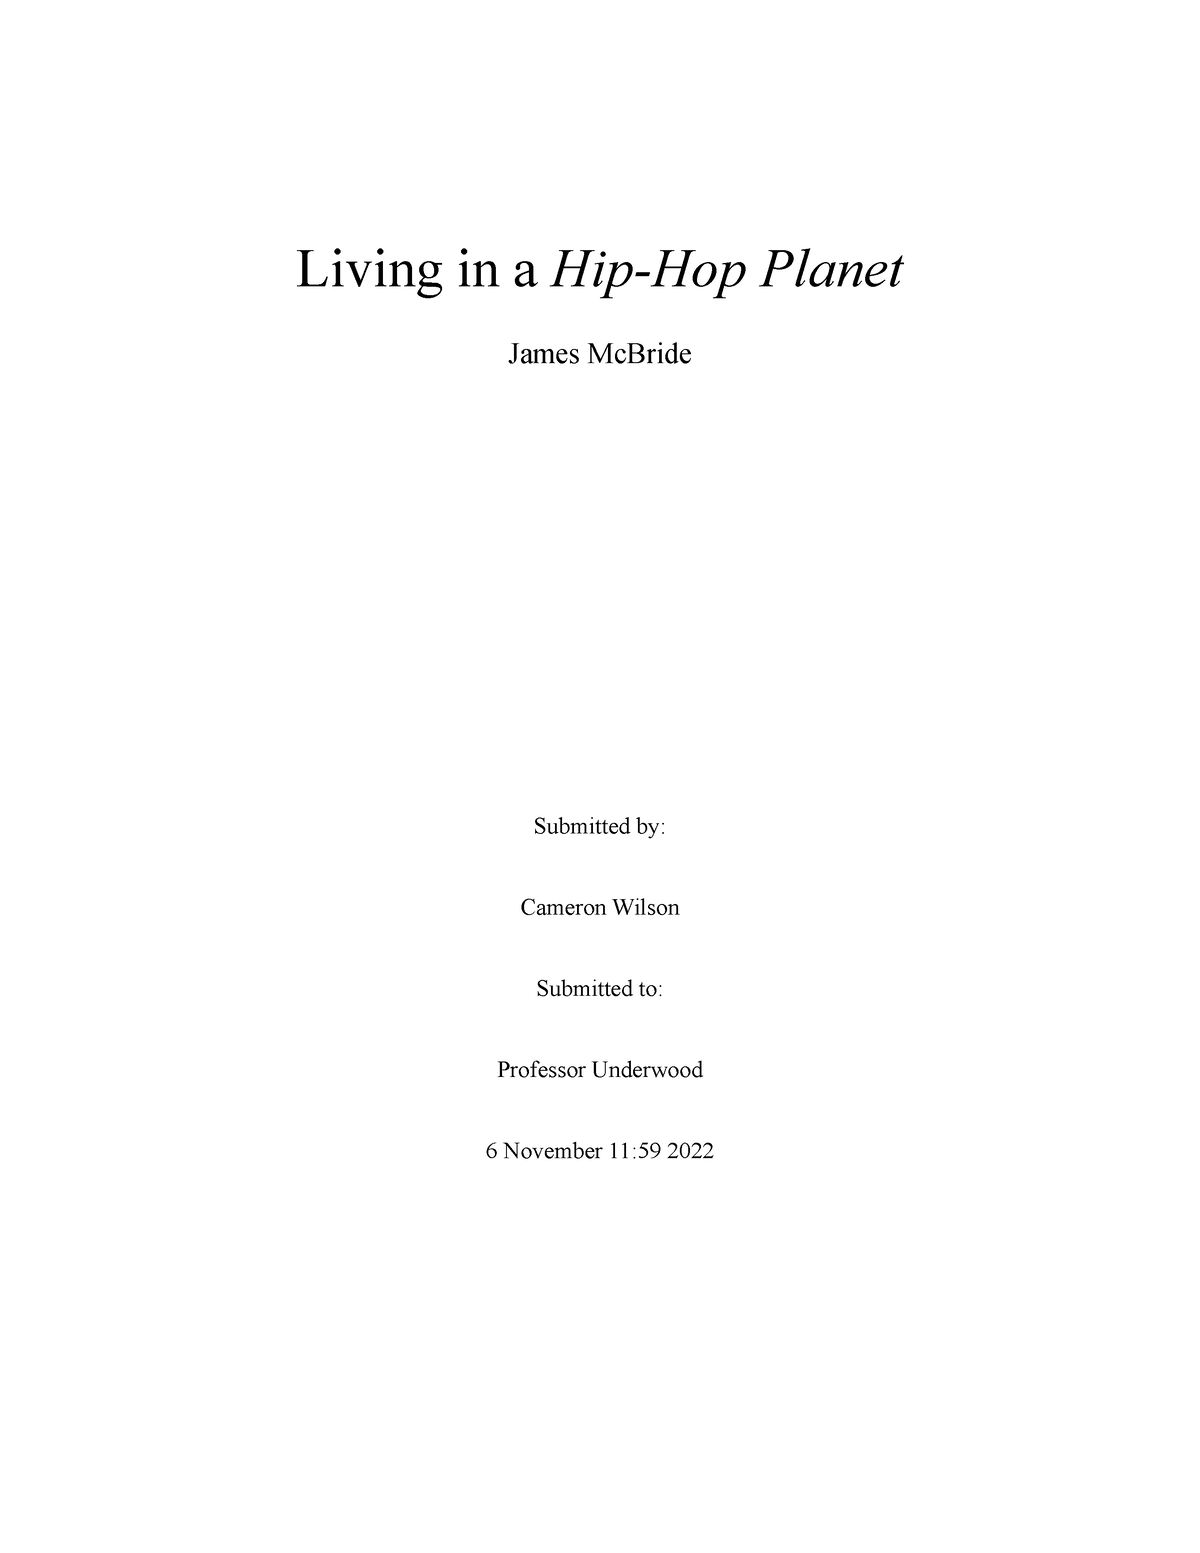 hip hop planet essay pdf